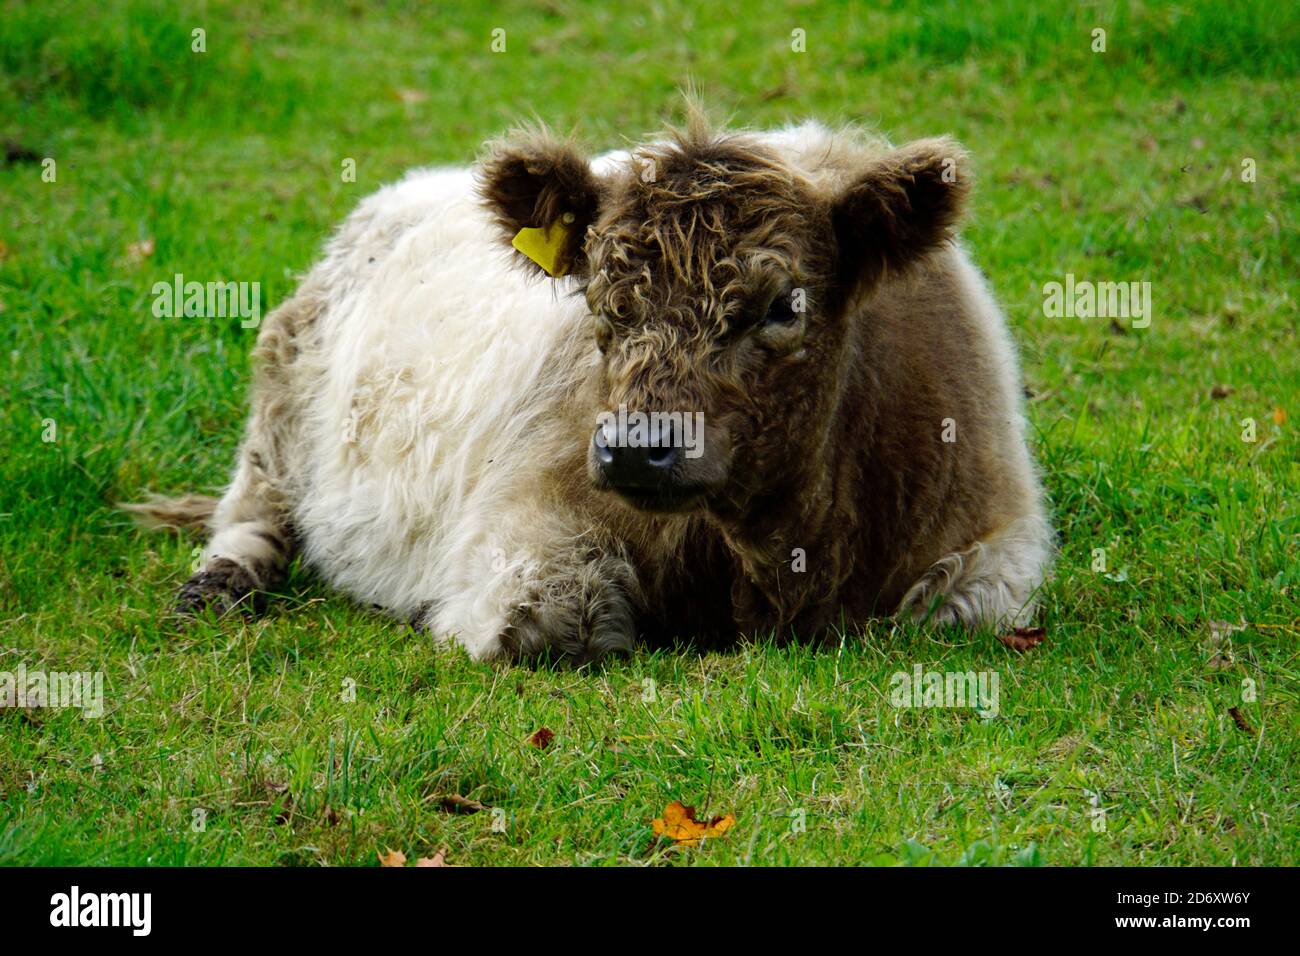 Eine wollige Kuh oder ein Kalb, die auf der Wiese liegt. Halb braun, halb weiß gefärbt. Stockfoto